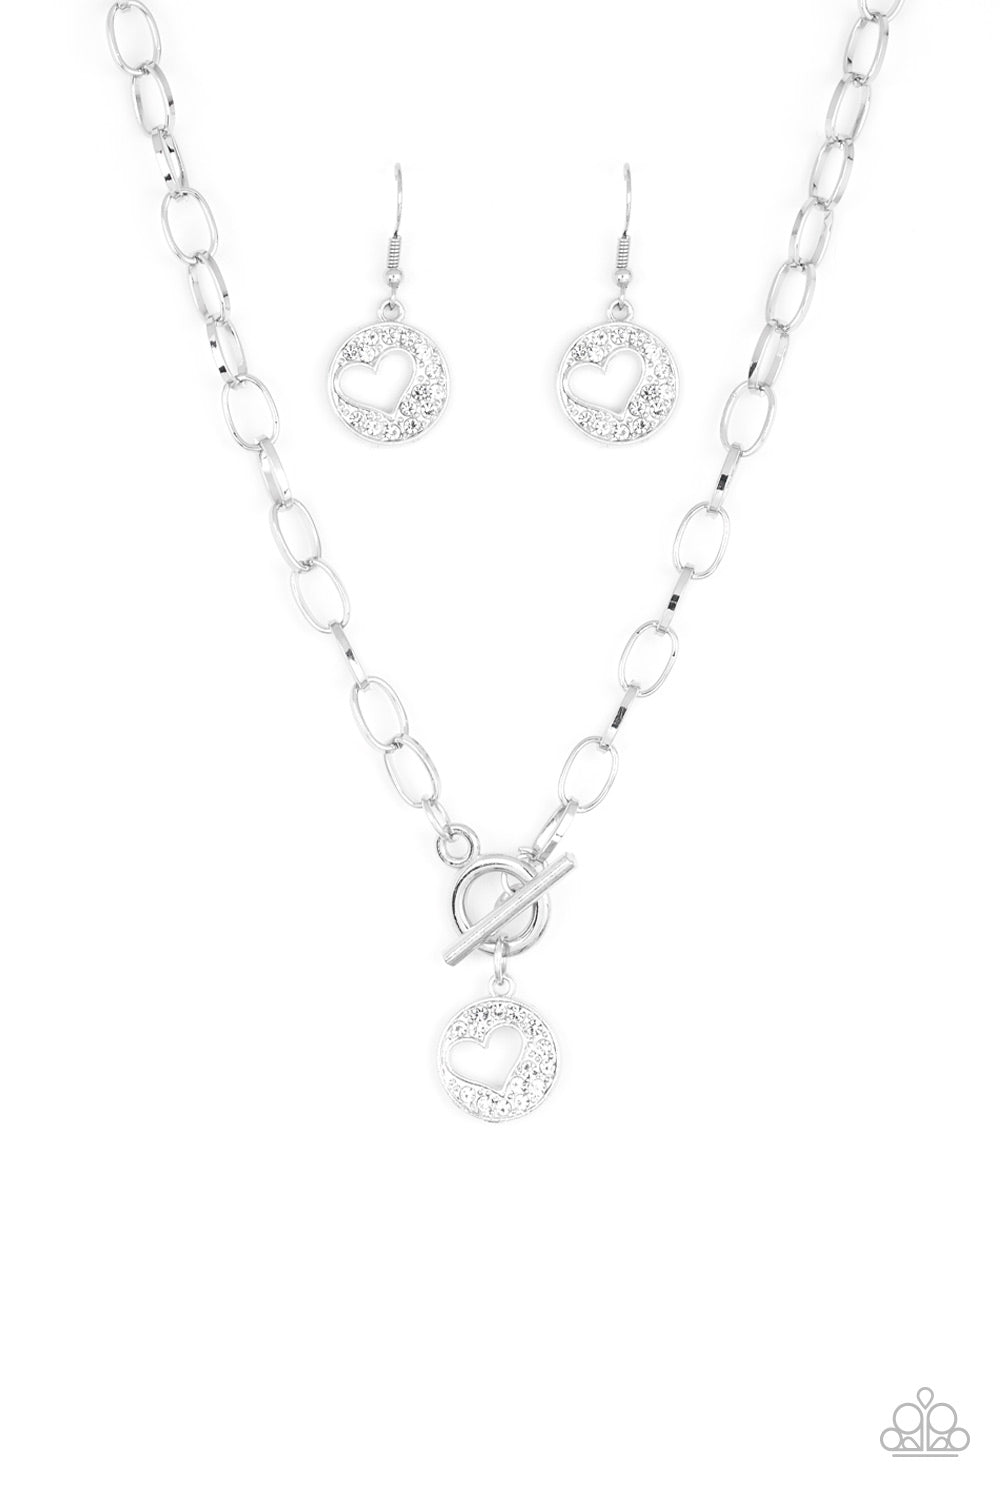 Paparazzi jewelry Wholeheartedly Whimsical White Stone Heart Pendant  Necklace | eBay